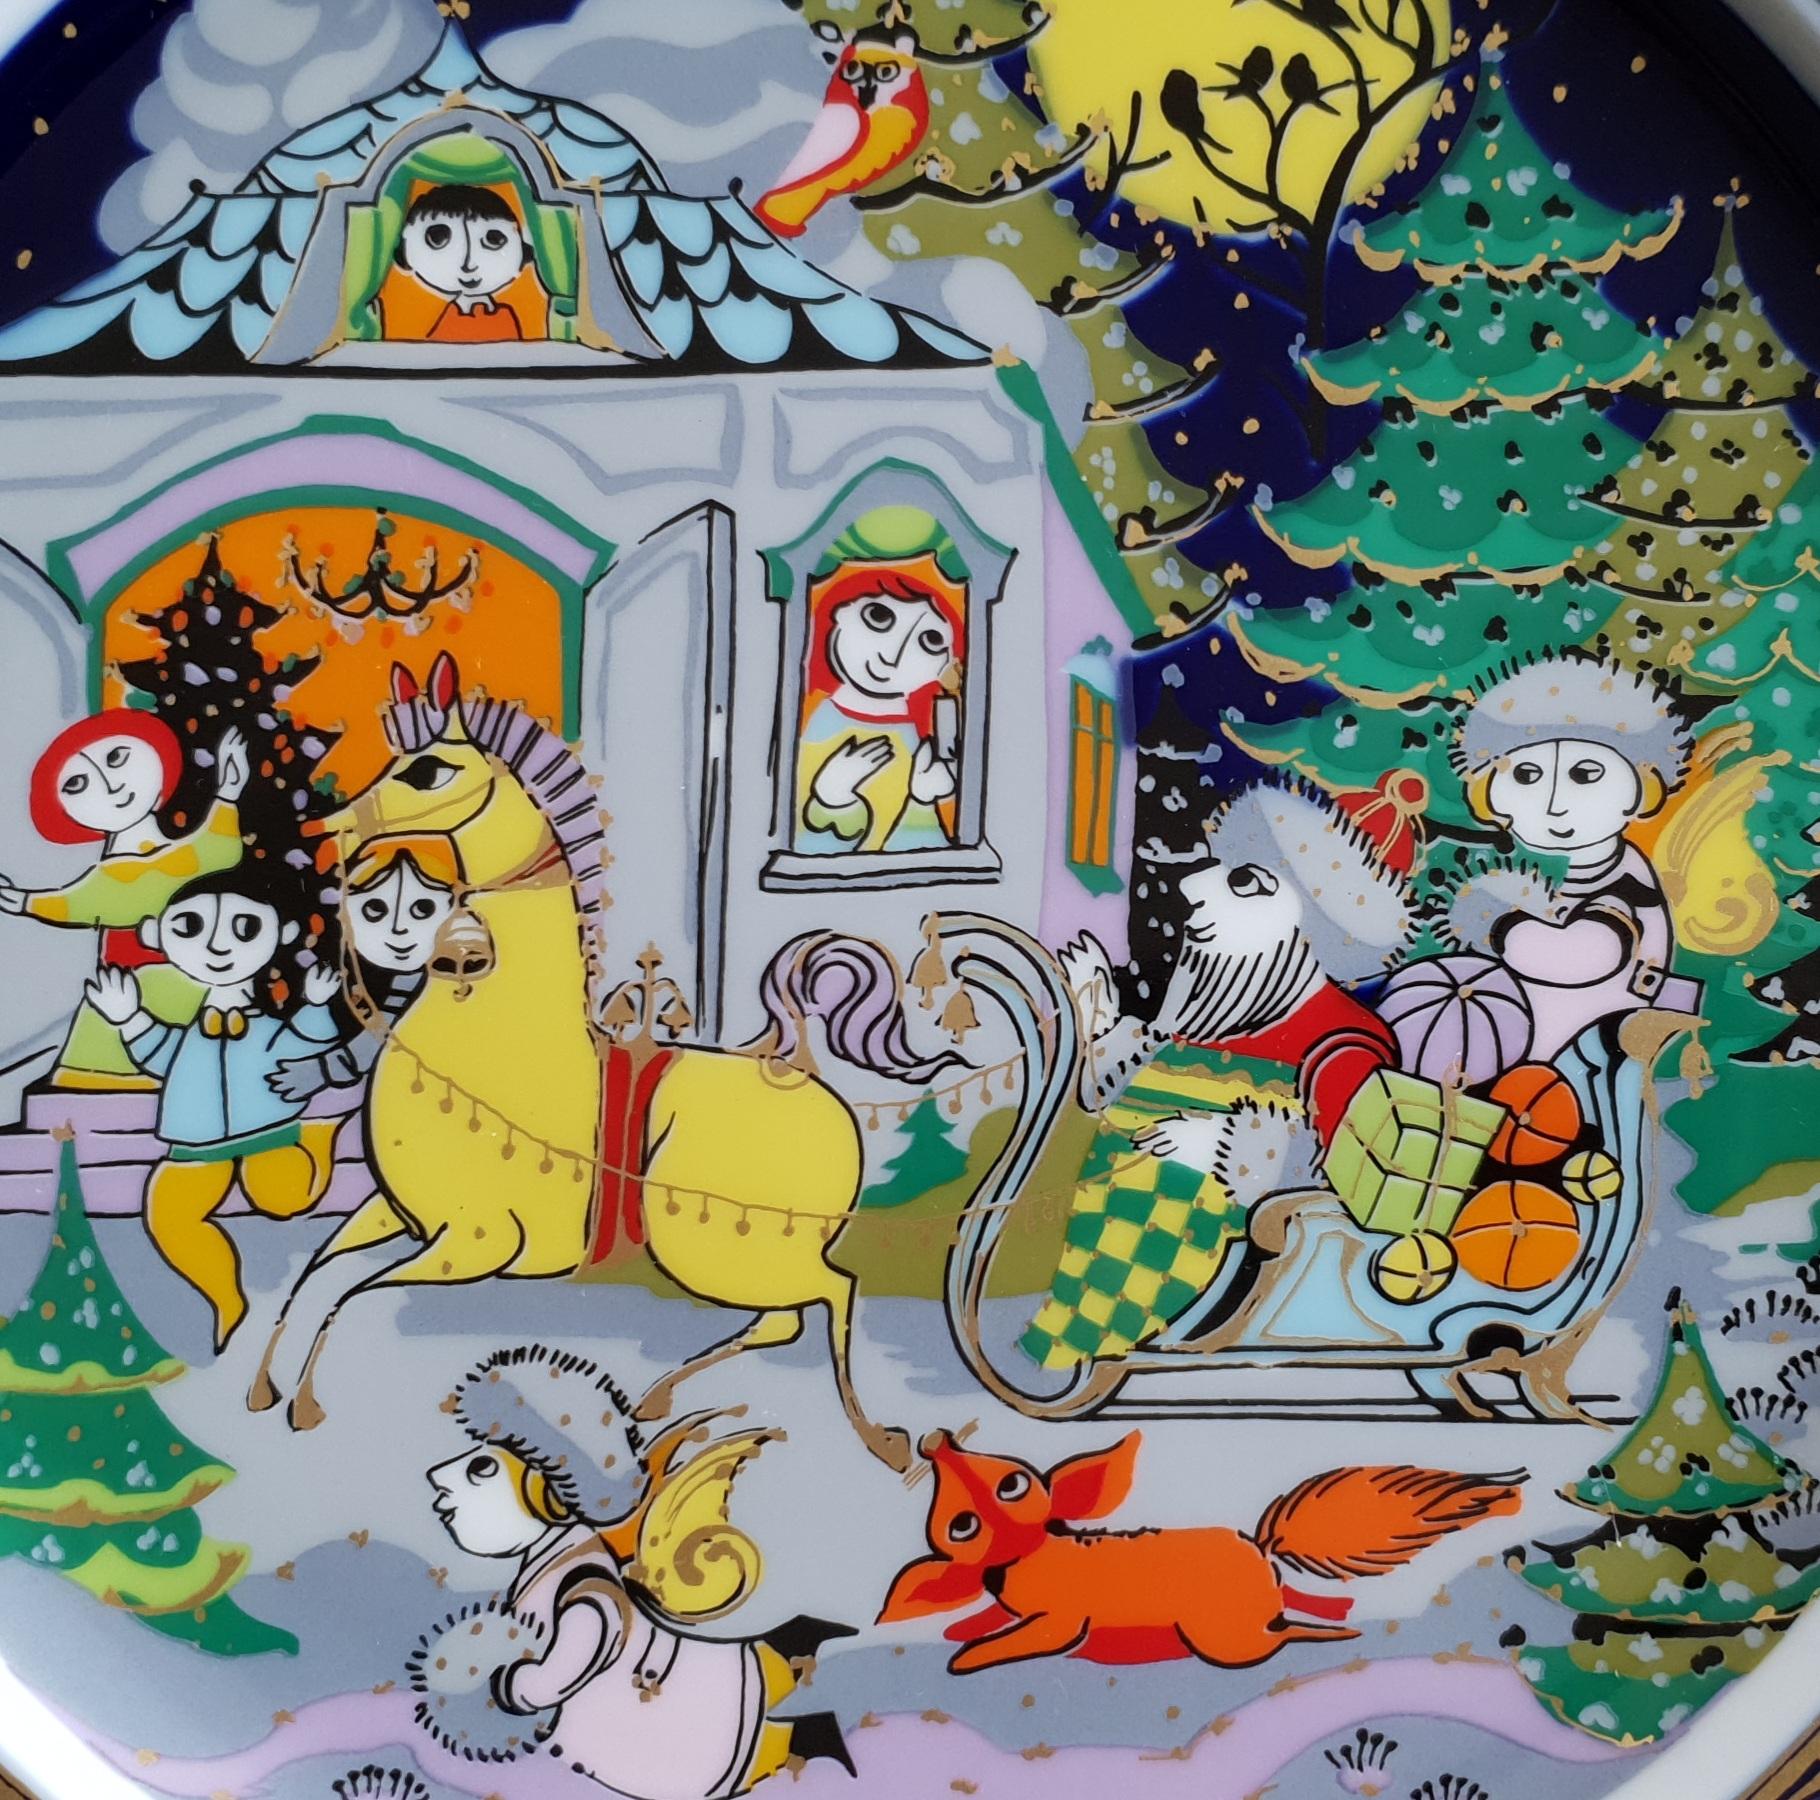 Assiette de Noël en porcelaine de Bjørn Wiinblad 1984, produite par Rosenthal
Motif : Jingle Bells
Conçu par : Bjørn Wiinblad 
Diamètre : 11